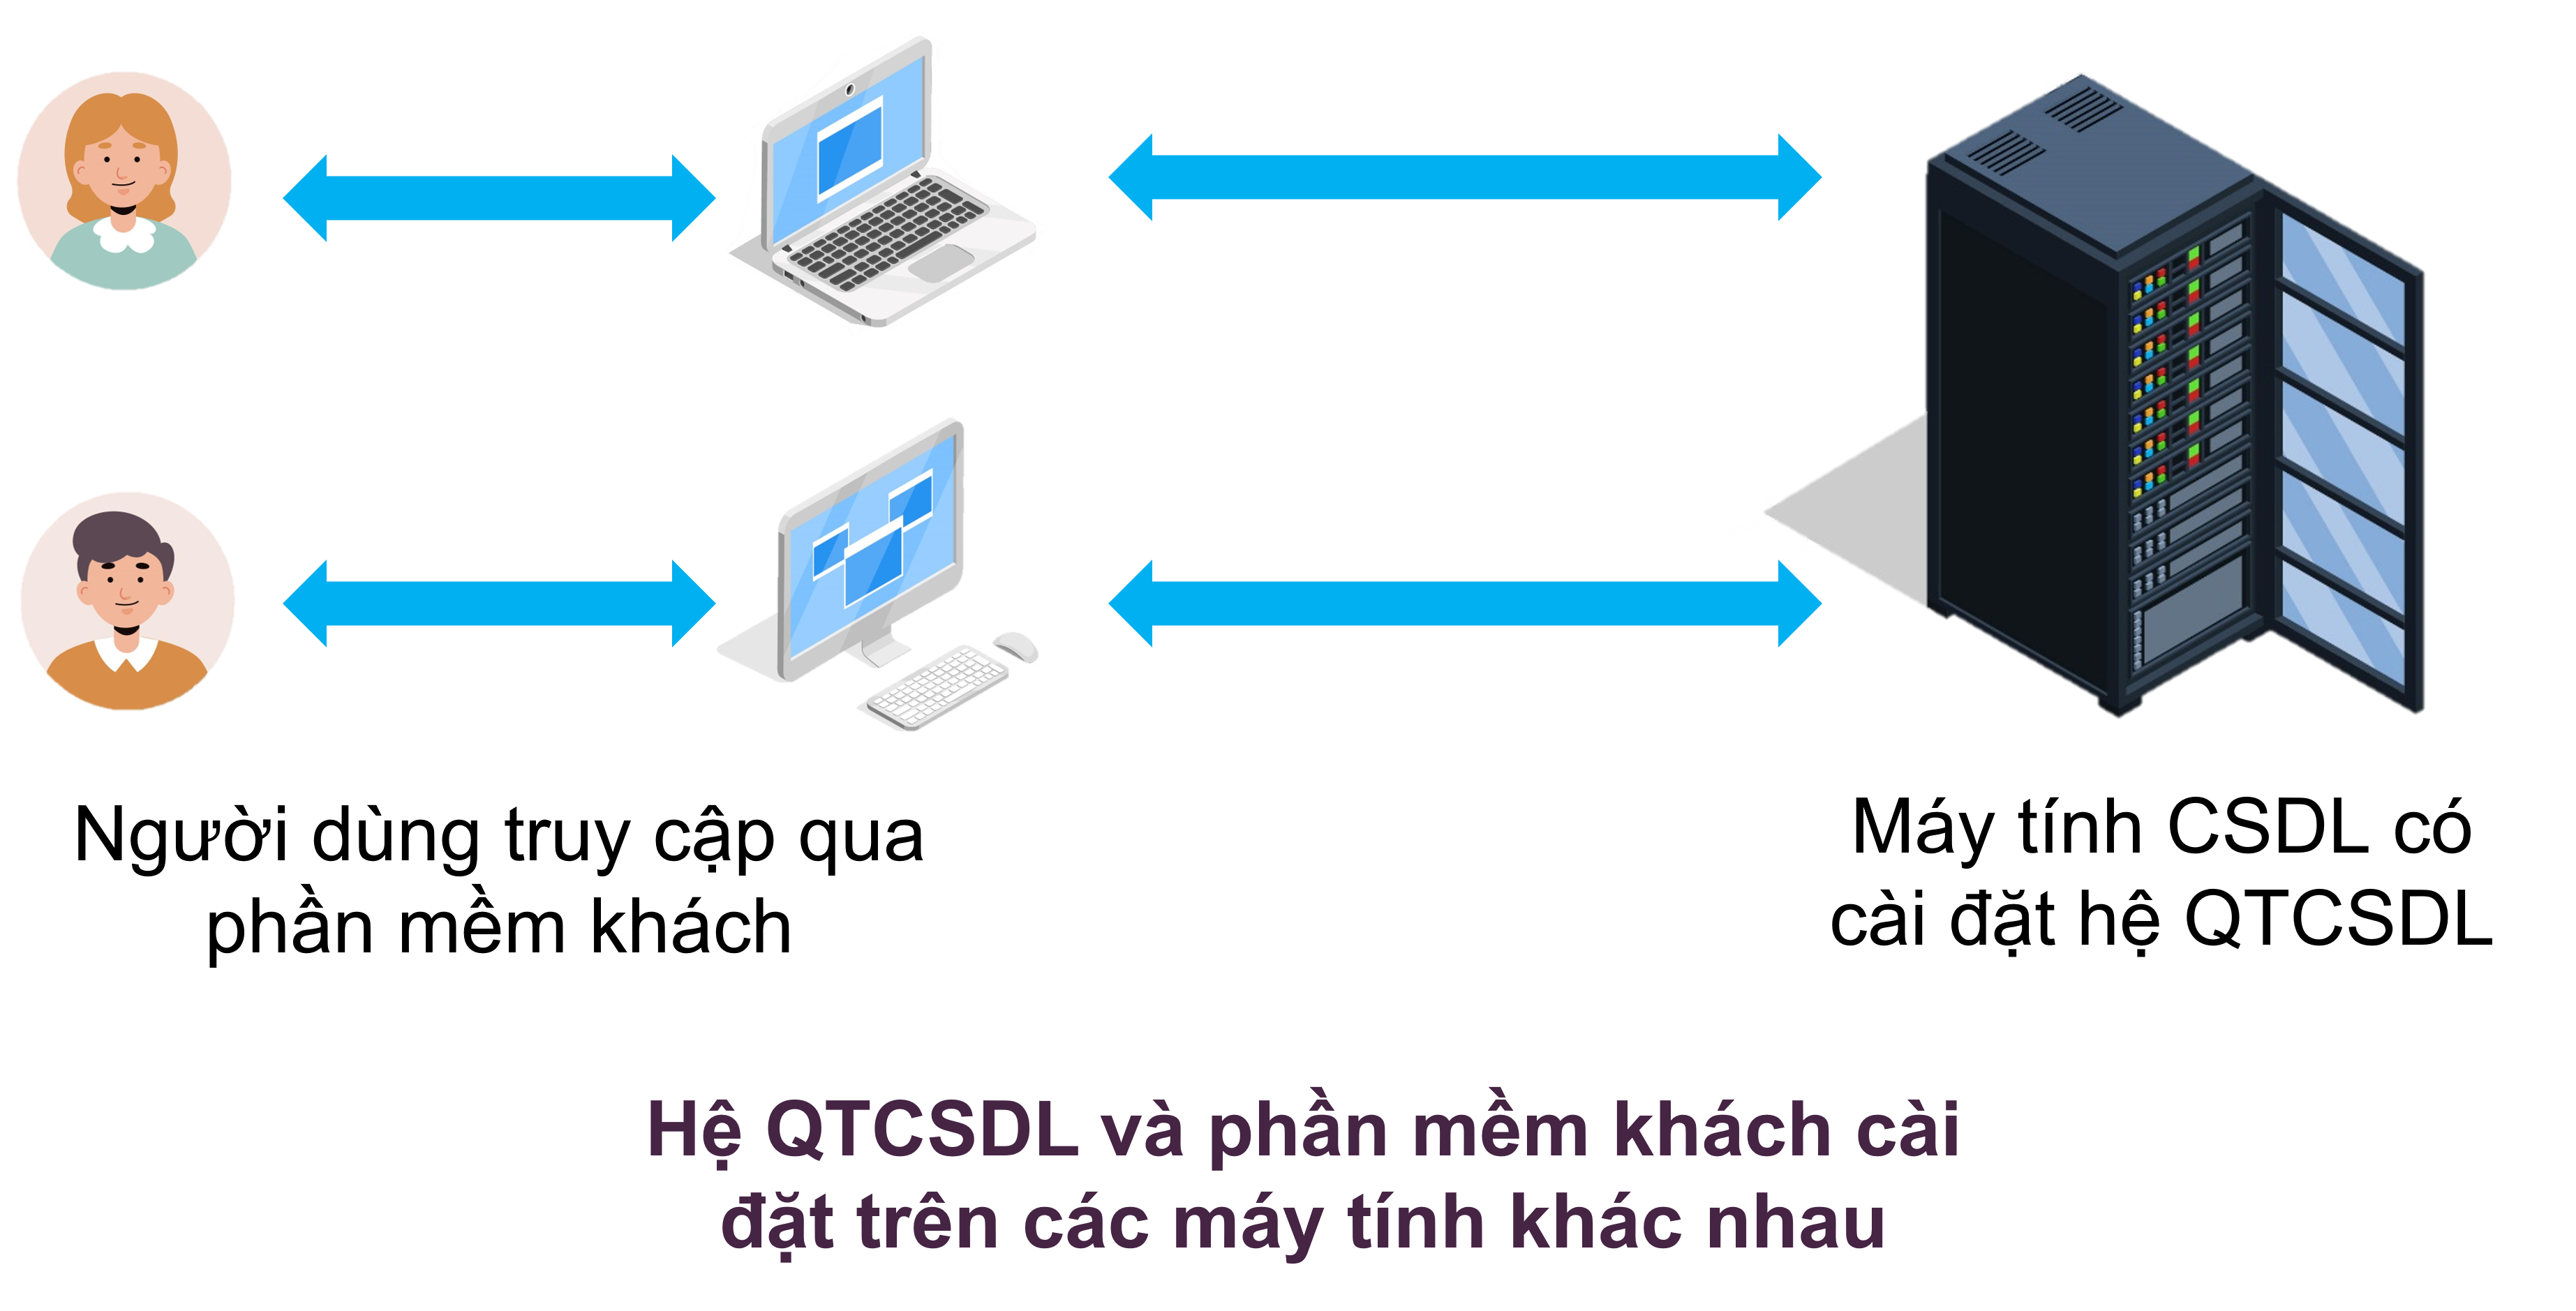 Hệ QTCSDL và phần mềm khách cài đặt trên các máy tính khác nhau.